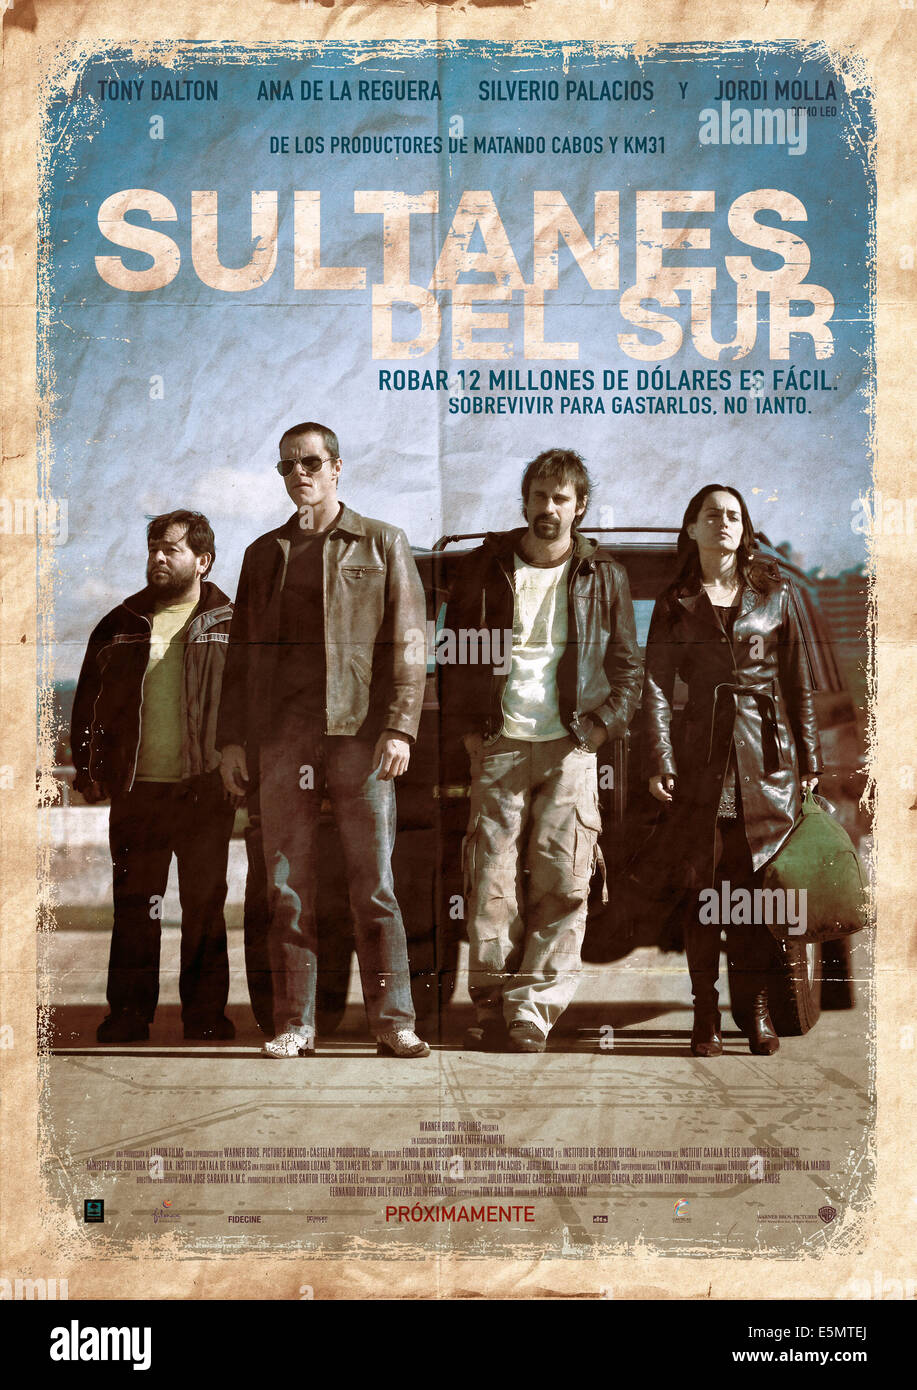 SULTANS OF THE SOUTH, (aka SULTANES DEL SUR), Silverio Palacios, Tony Dalton, Jordi Molla, Ana de la Reguera, 2007. Stock Photo